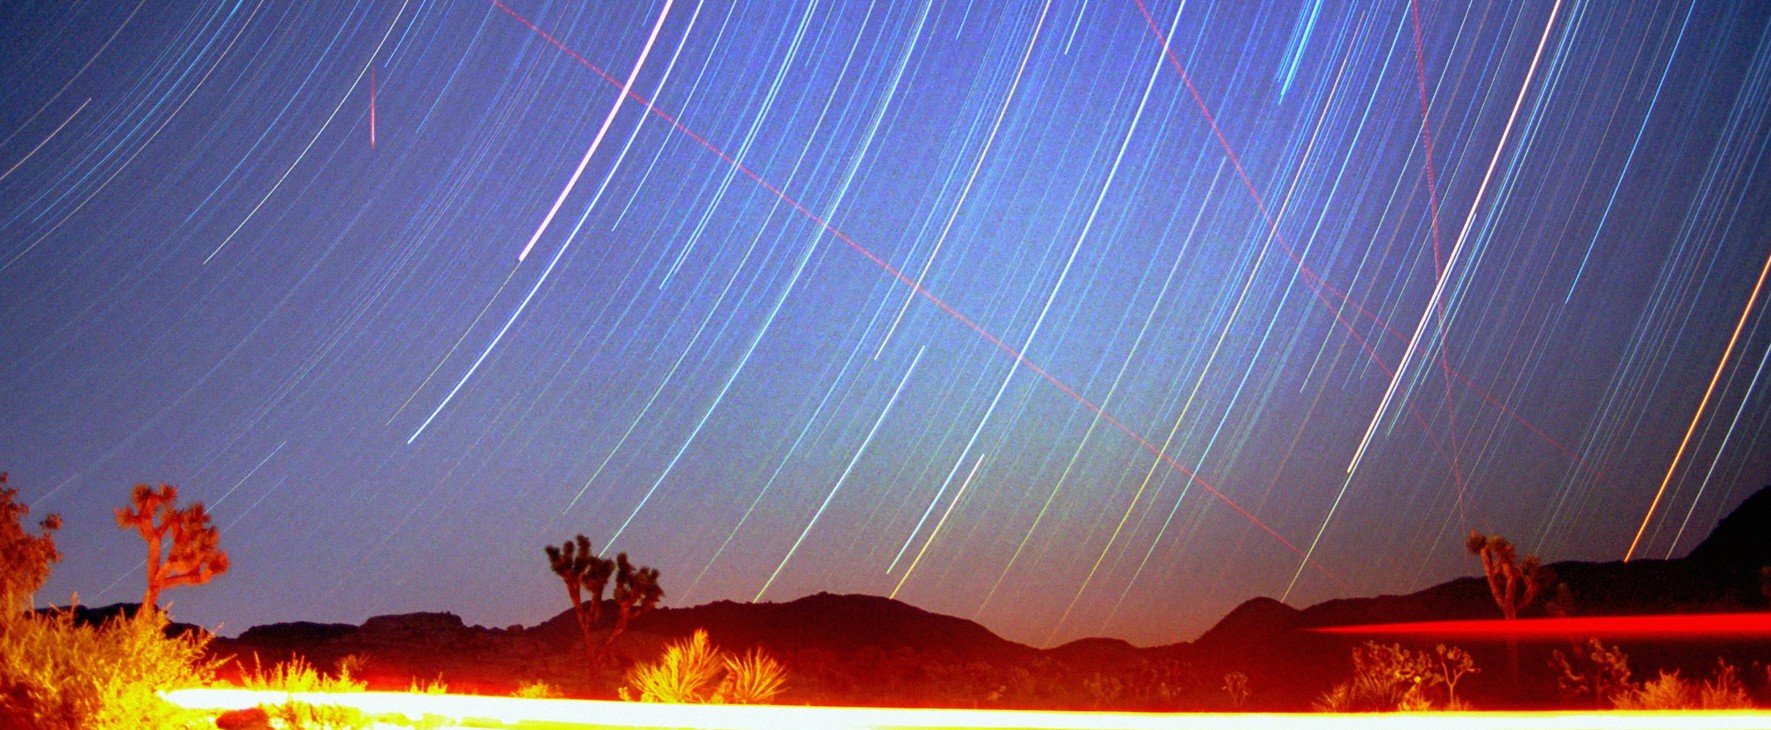 Több ezer meteor lehullására figyelmeztetnek a csillagászok, a hétvégén fokozott figyelemmel kell kísérni az égboltot mert bármi megtörténhet